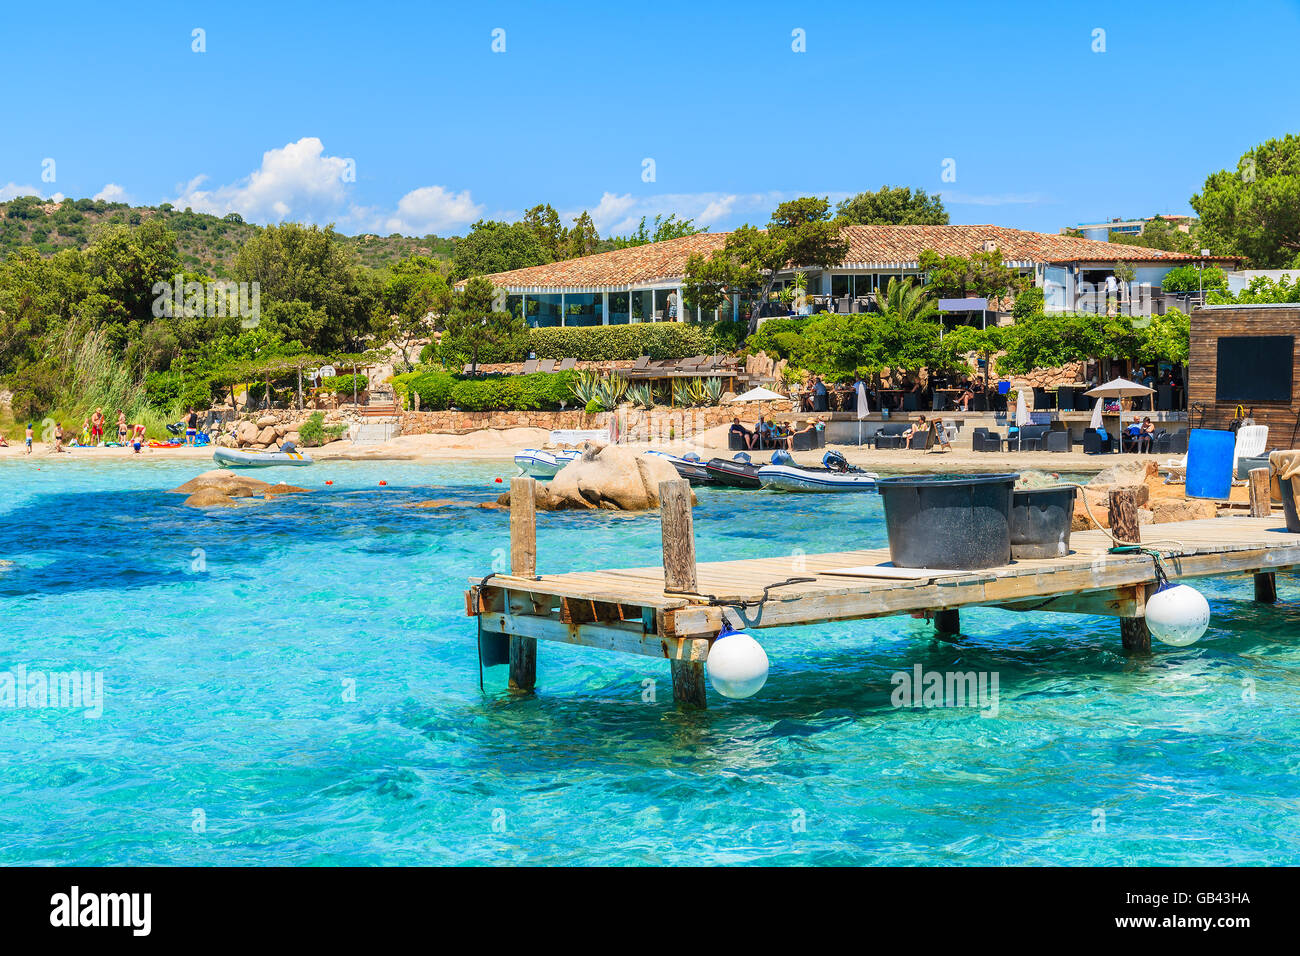 Jetée en bois et d'azur de l'eau de mer de la plage de Santa giulia, Corse, France Banque D'Images